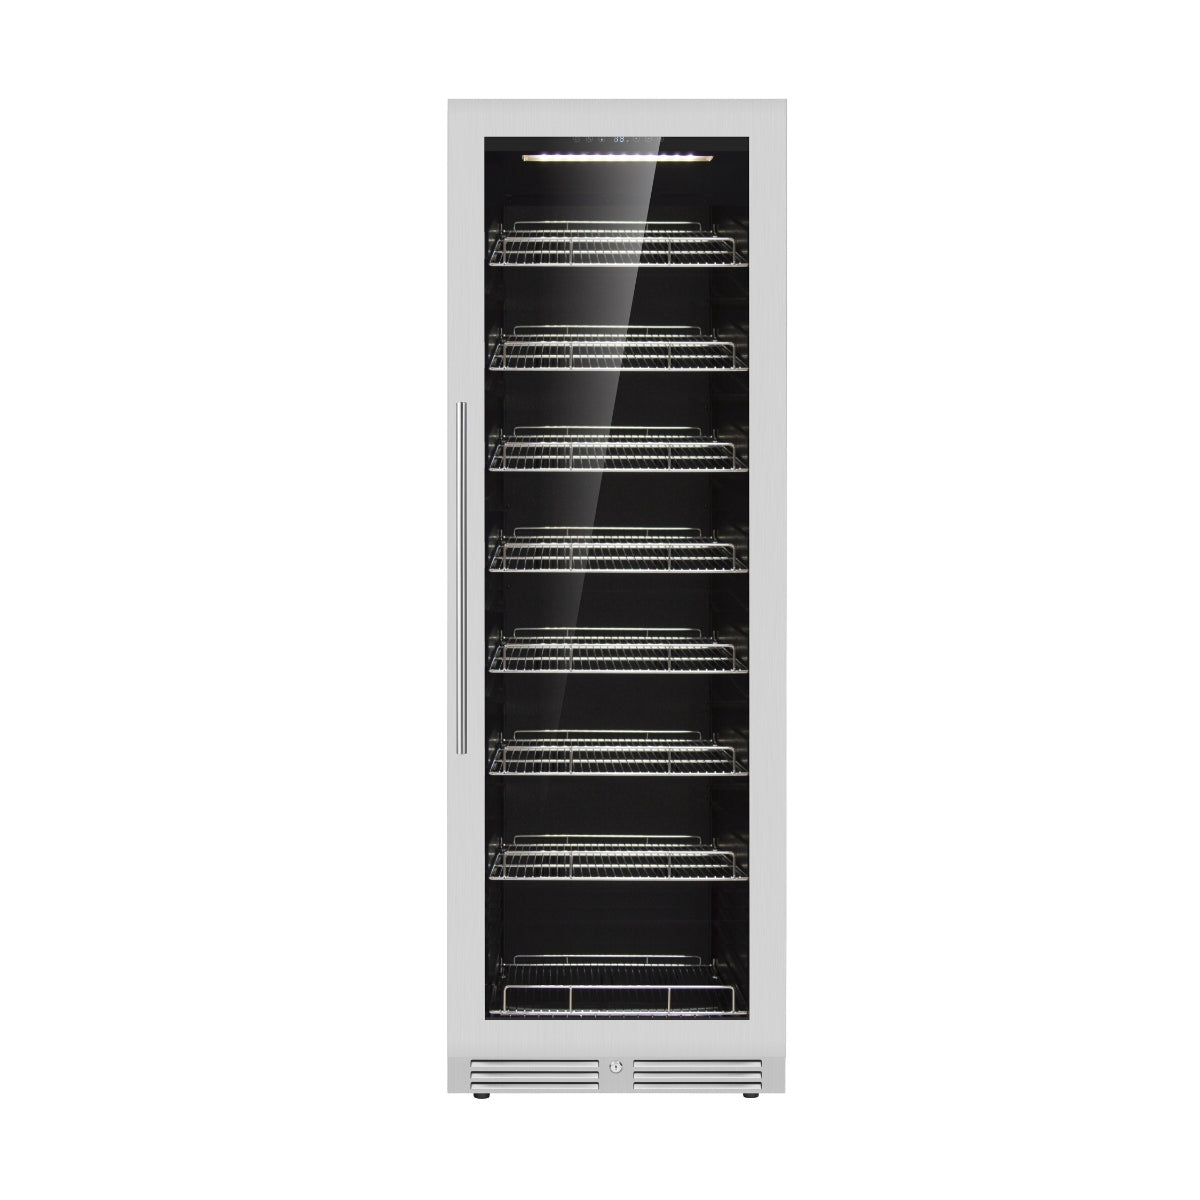 KingsBottle Large Beverage Refrigerator With Low-E Glass Door - KBU425BX